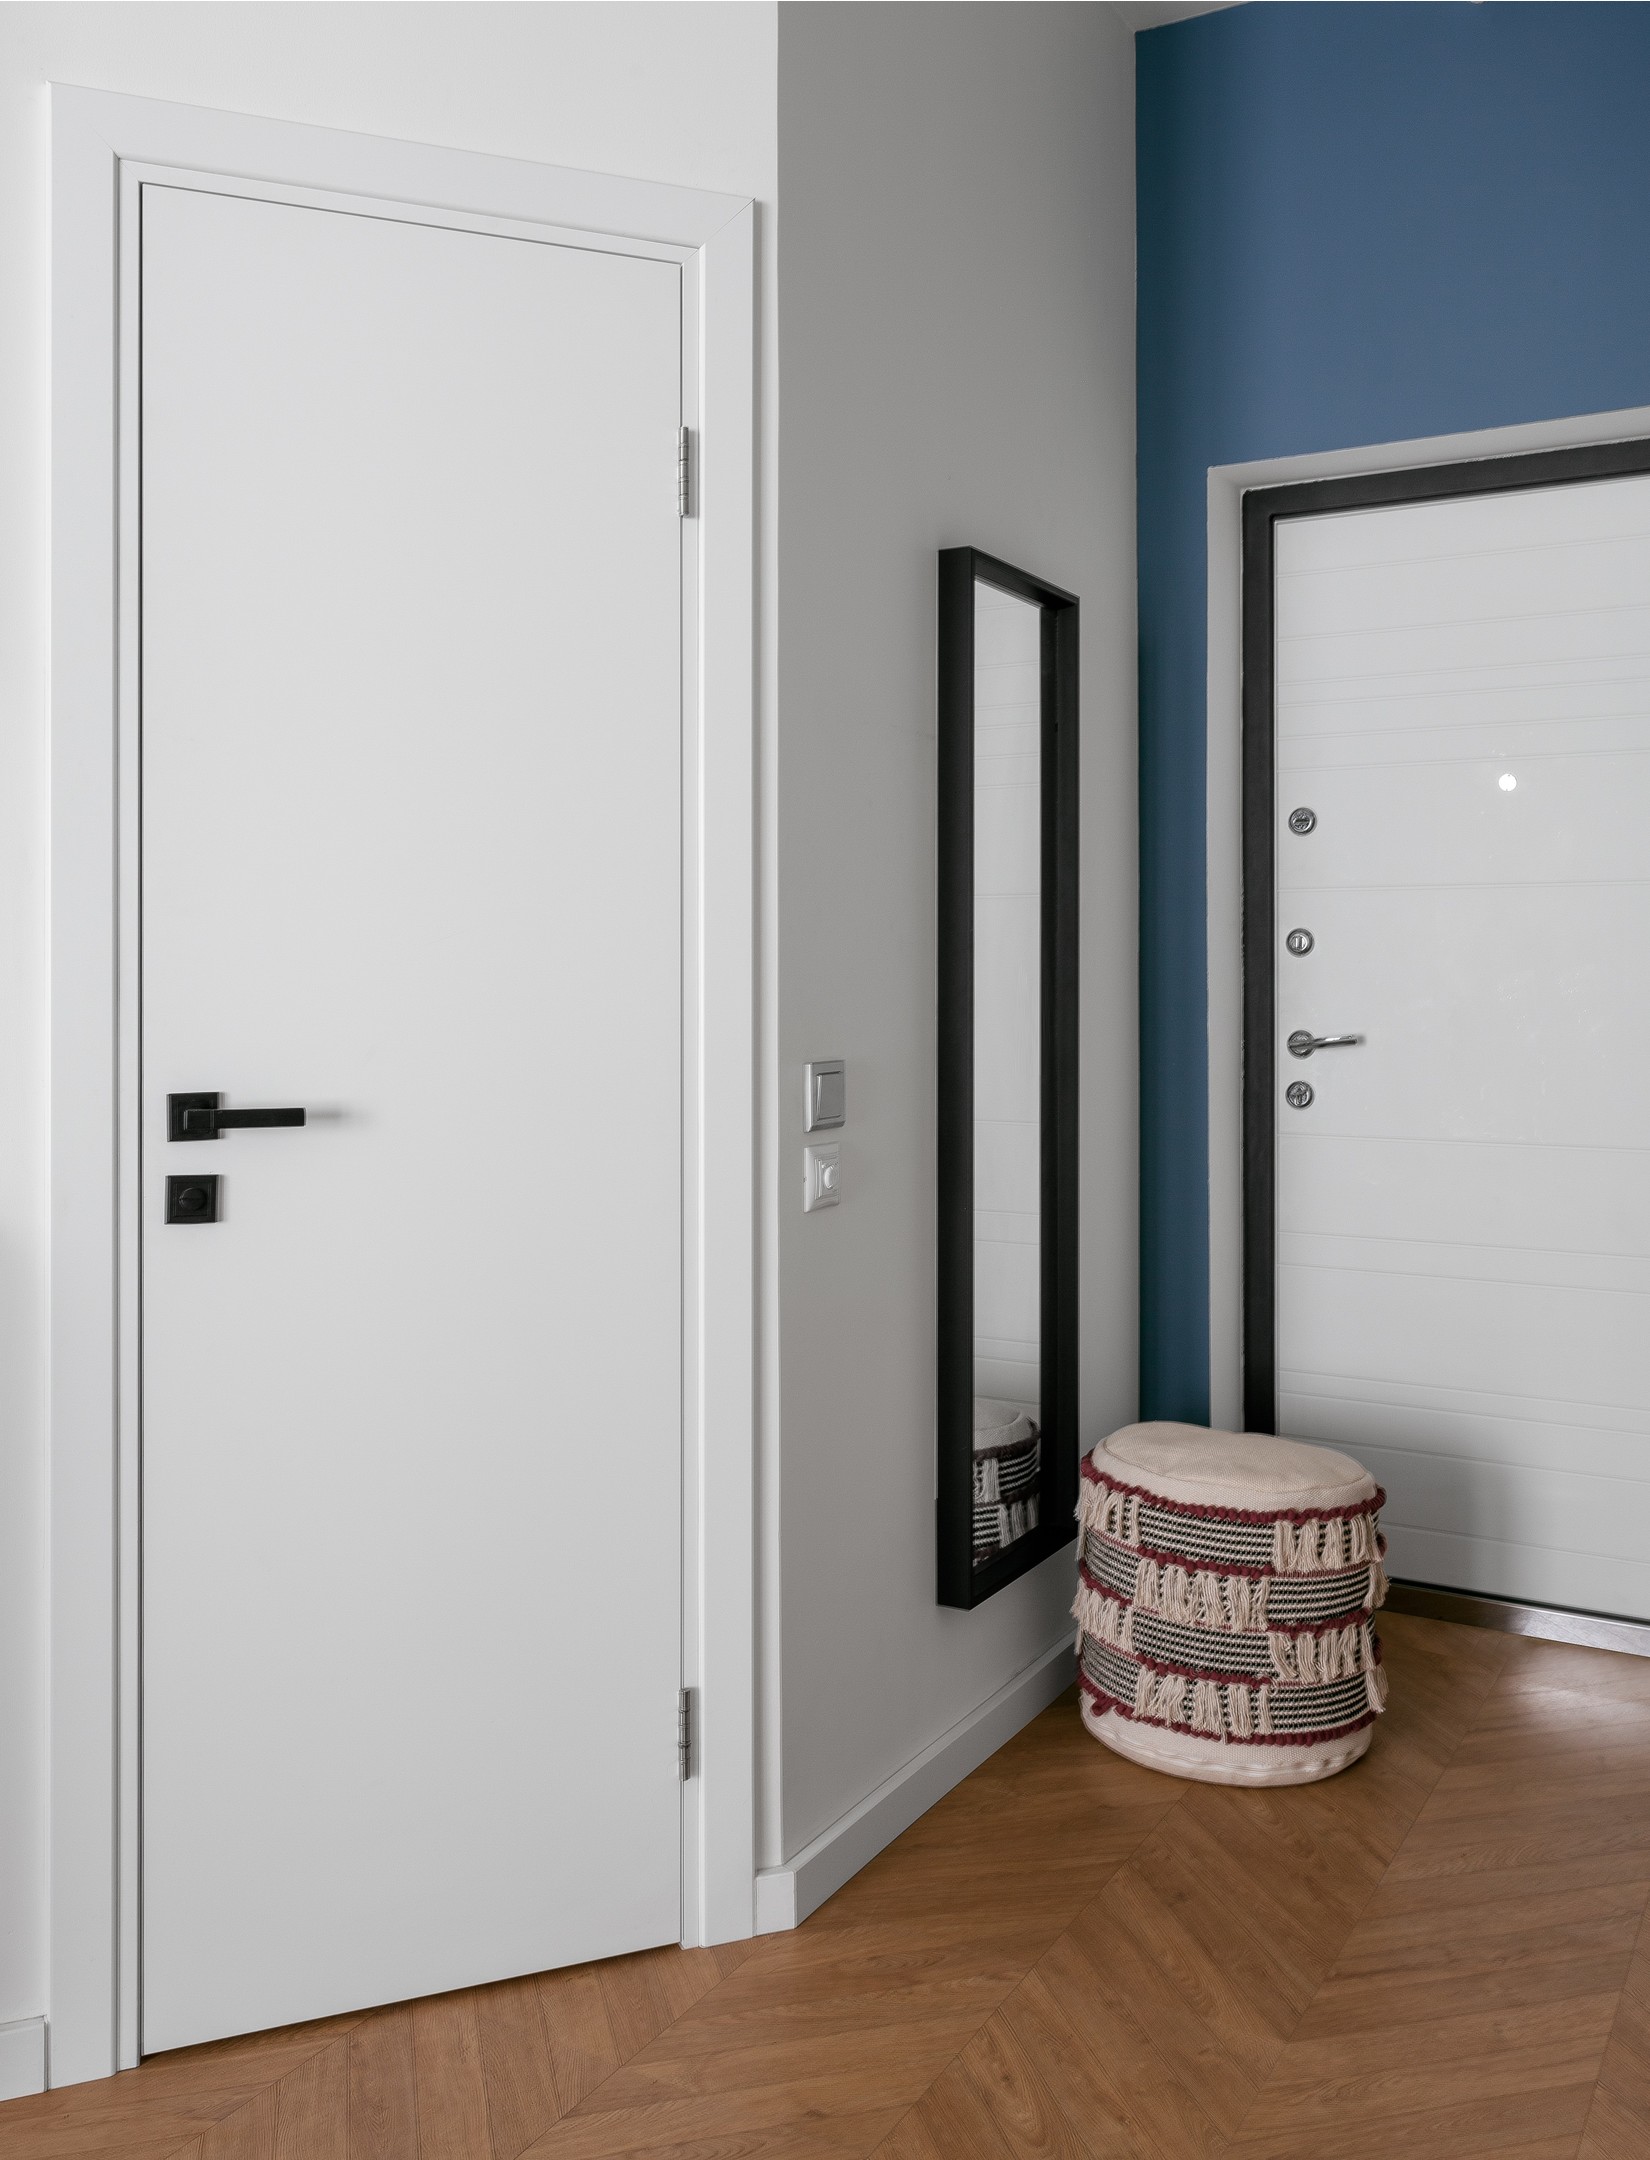 Lối vào sử dụng sơn tường màu xanh lam đậm tại cánh cửa ra vào, thêm một chiếc ghế đôn êm ái cùng tấm gương khổ dọc để chủ nhân 'làm điệu' trước khi ra khỏi nhà. 